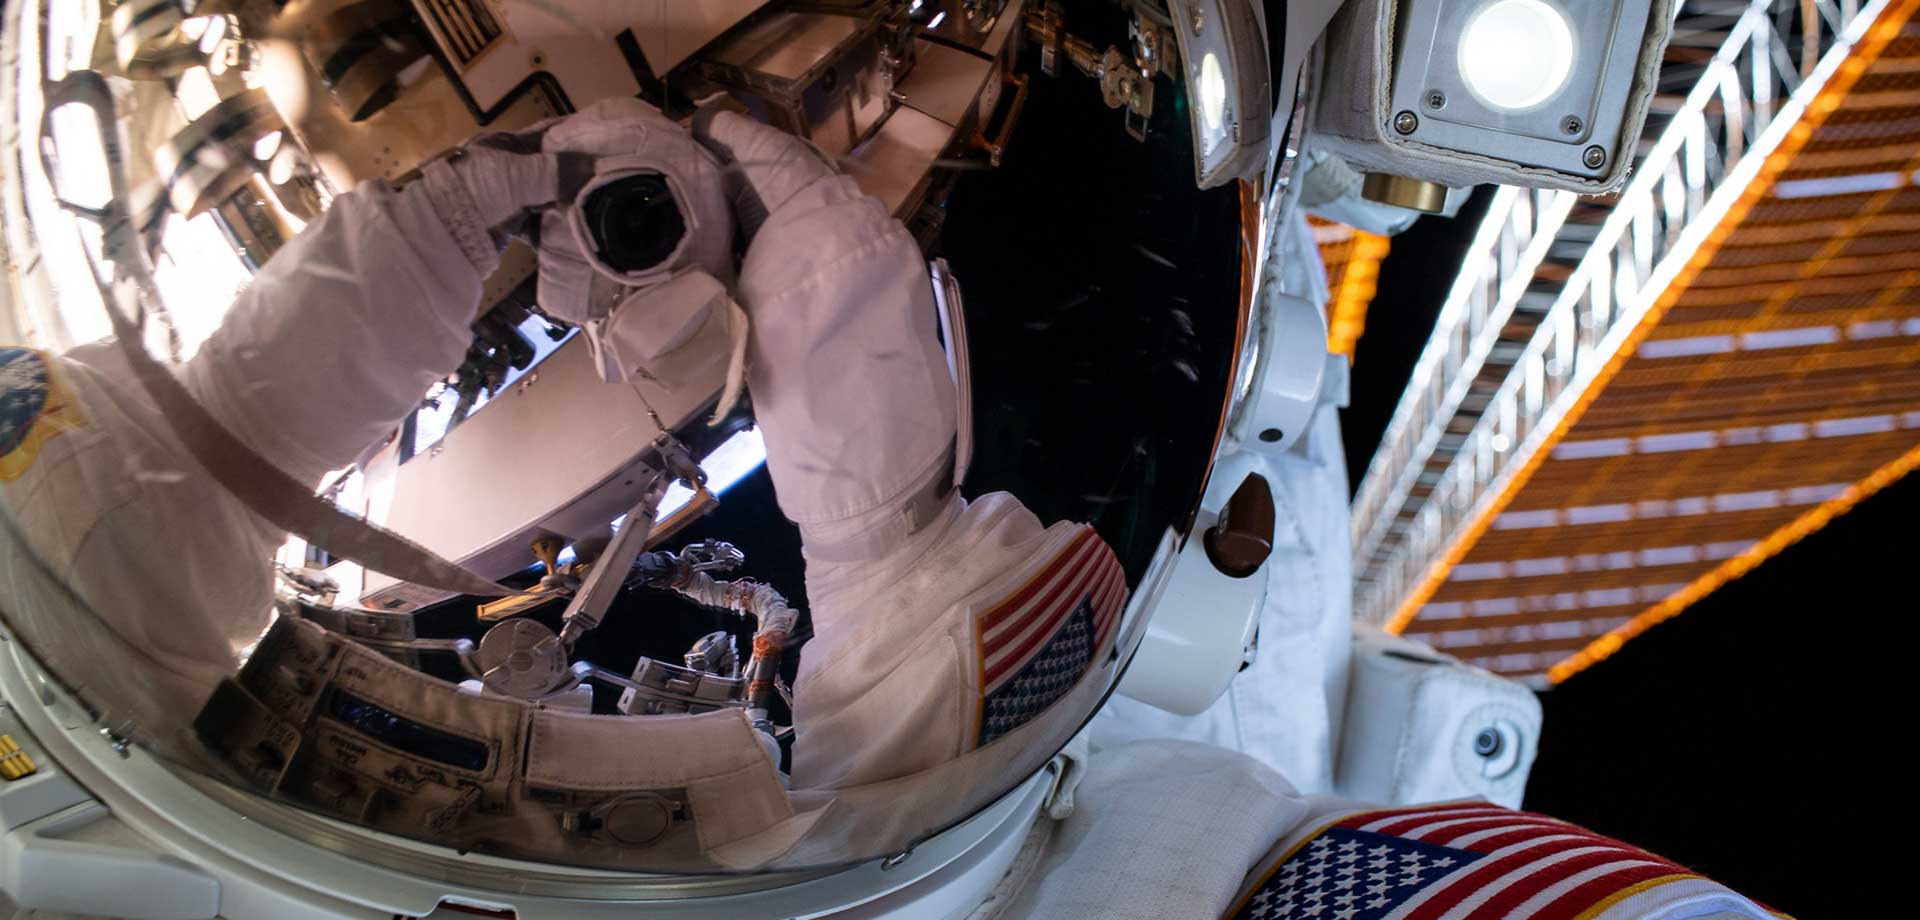 Astronaut Selfie